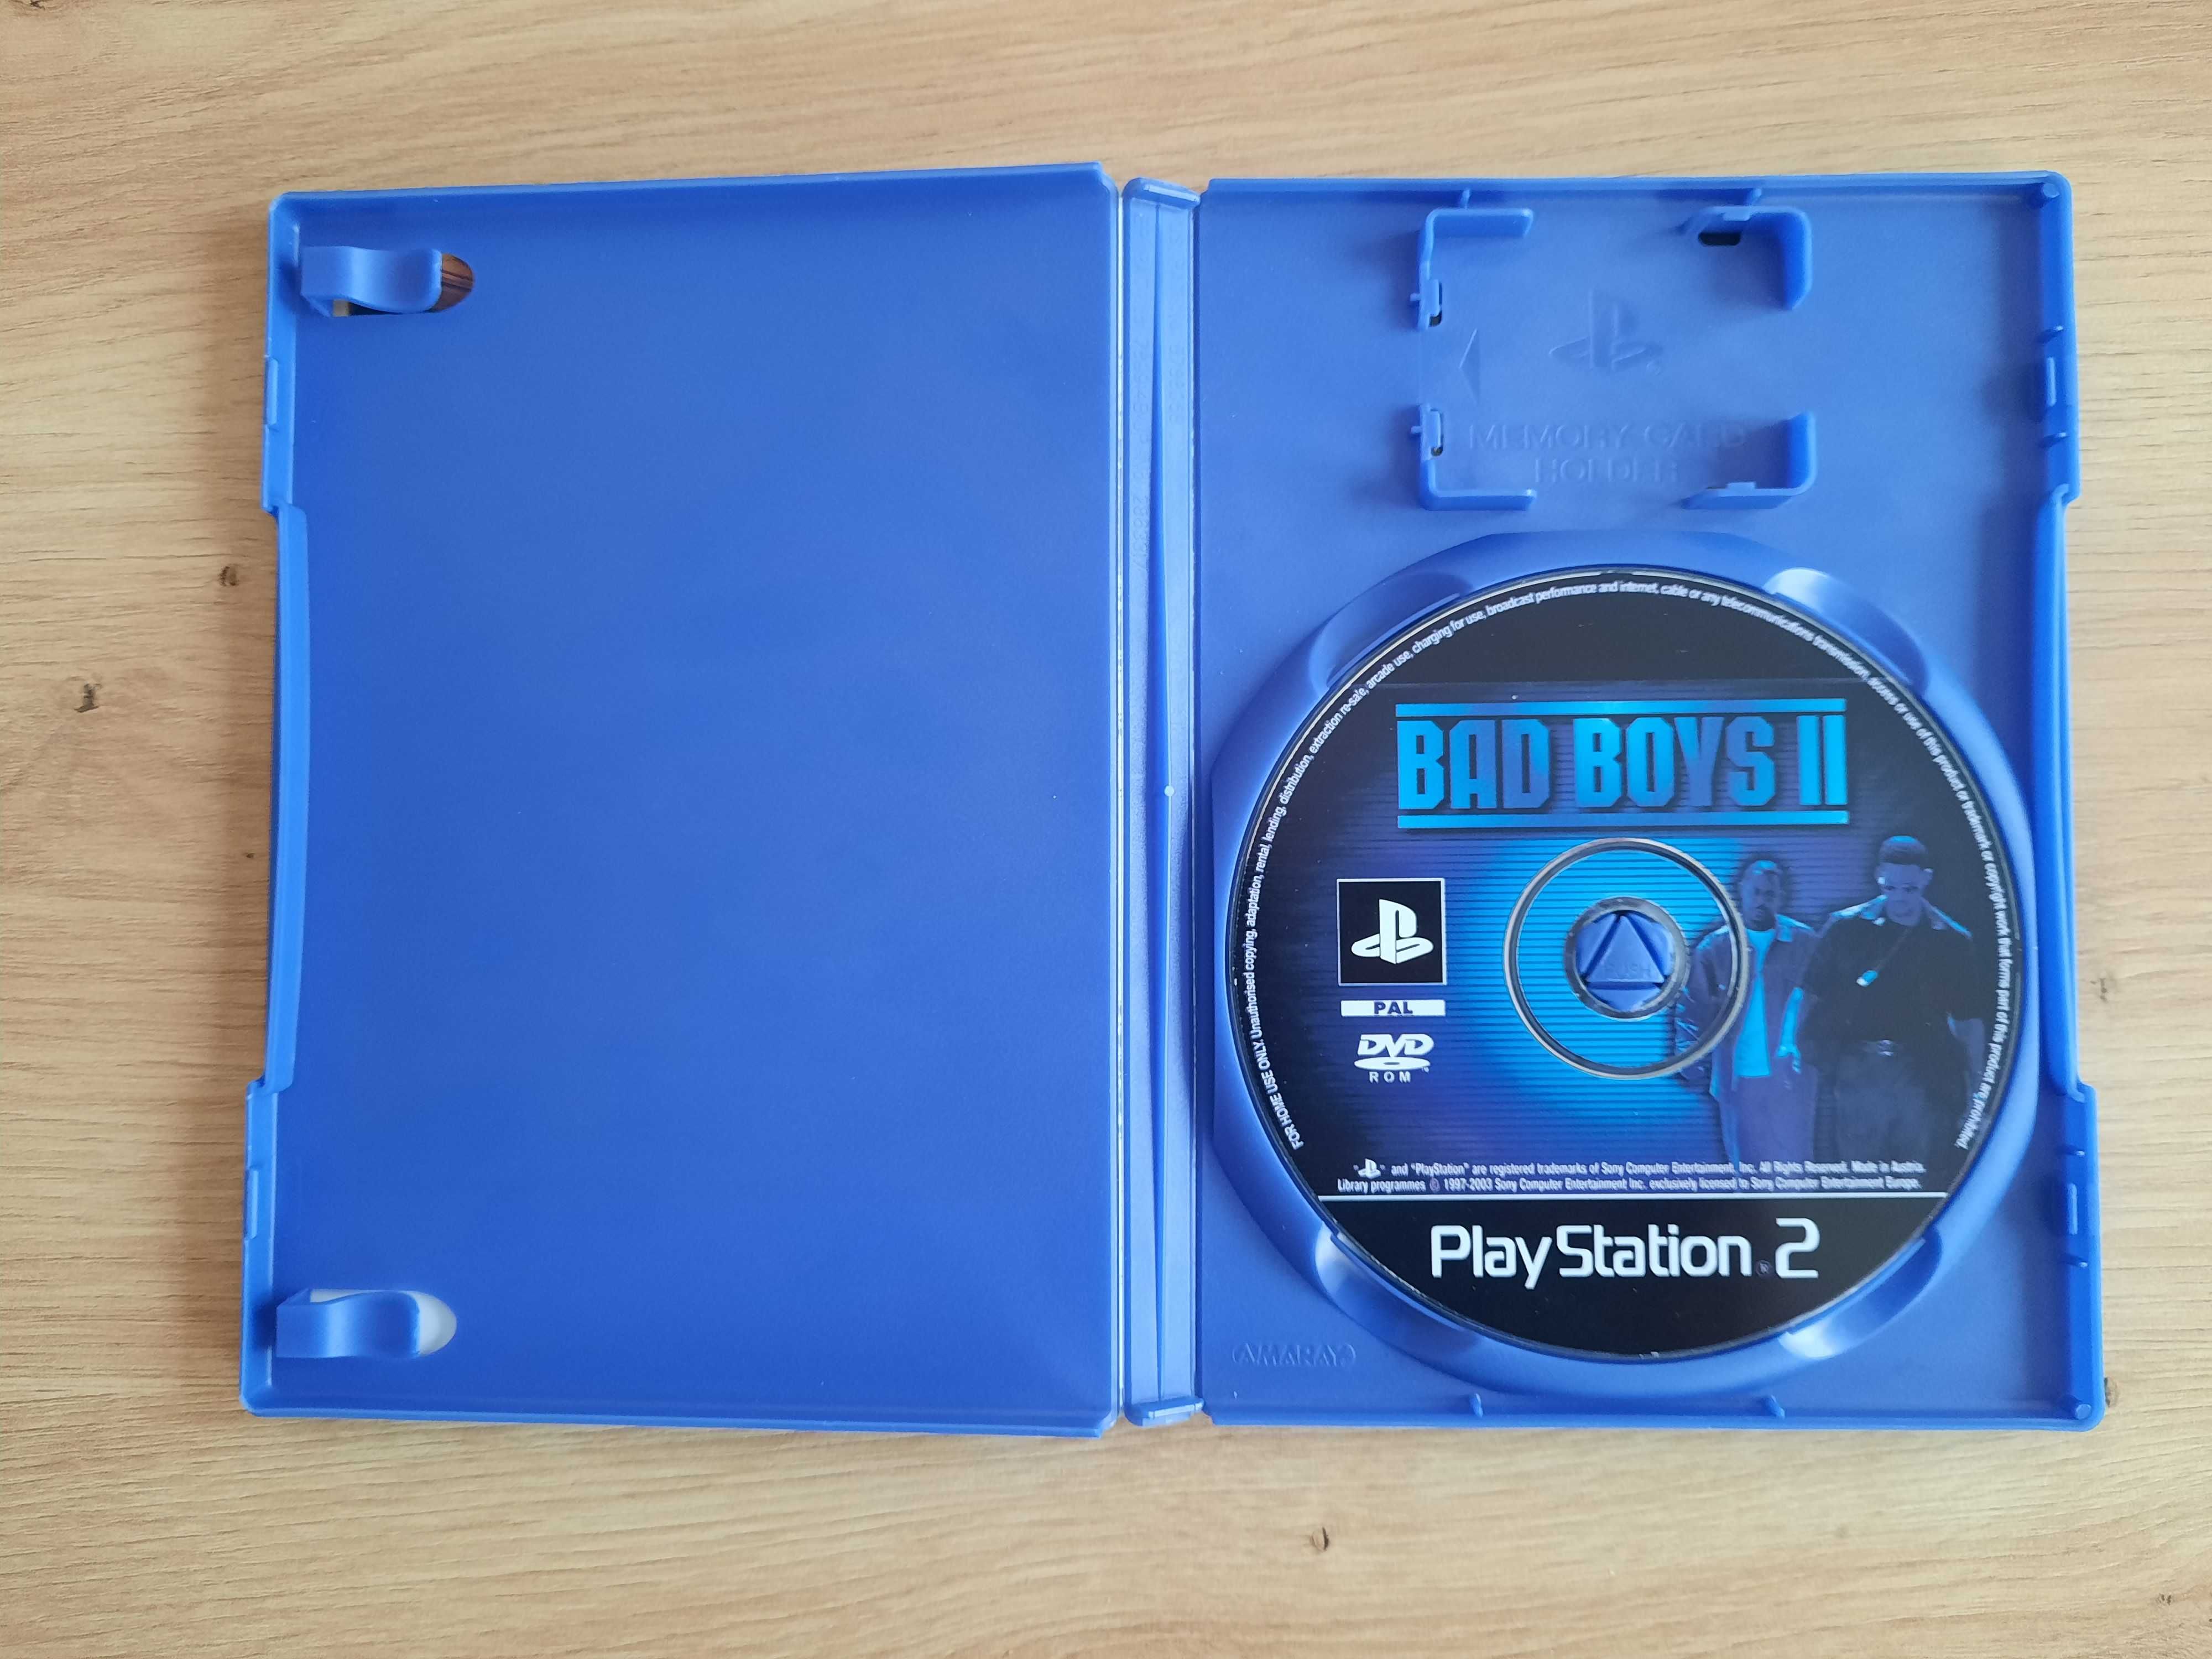 Bad Boys II gra na konsolę PS2